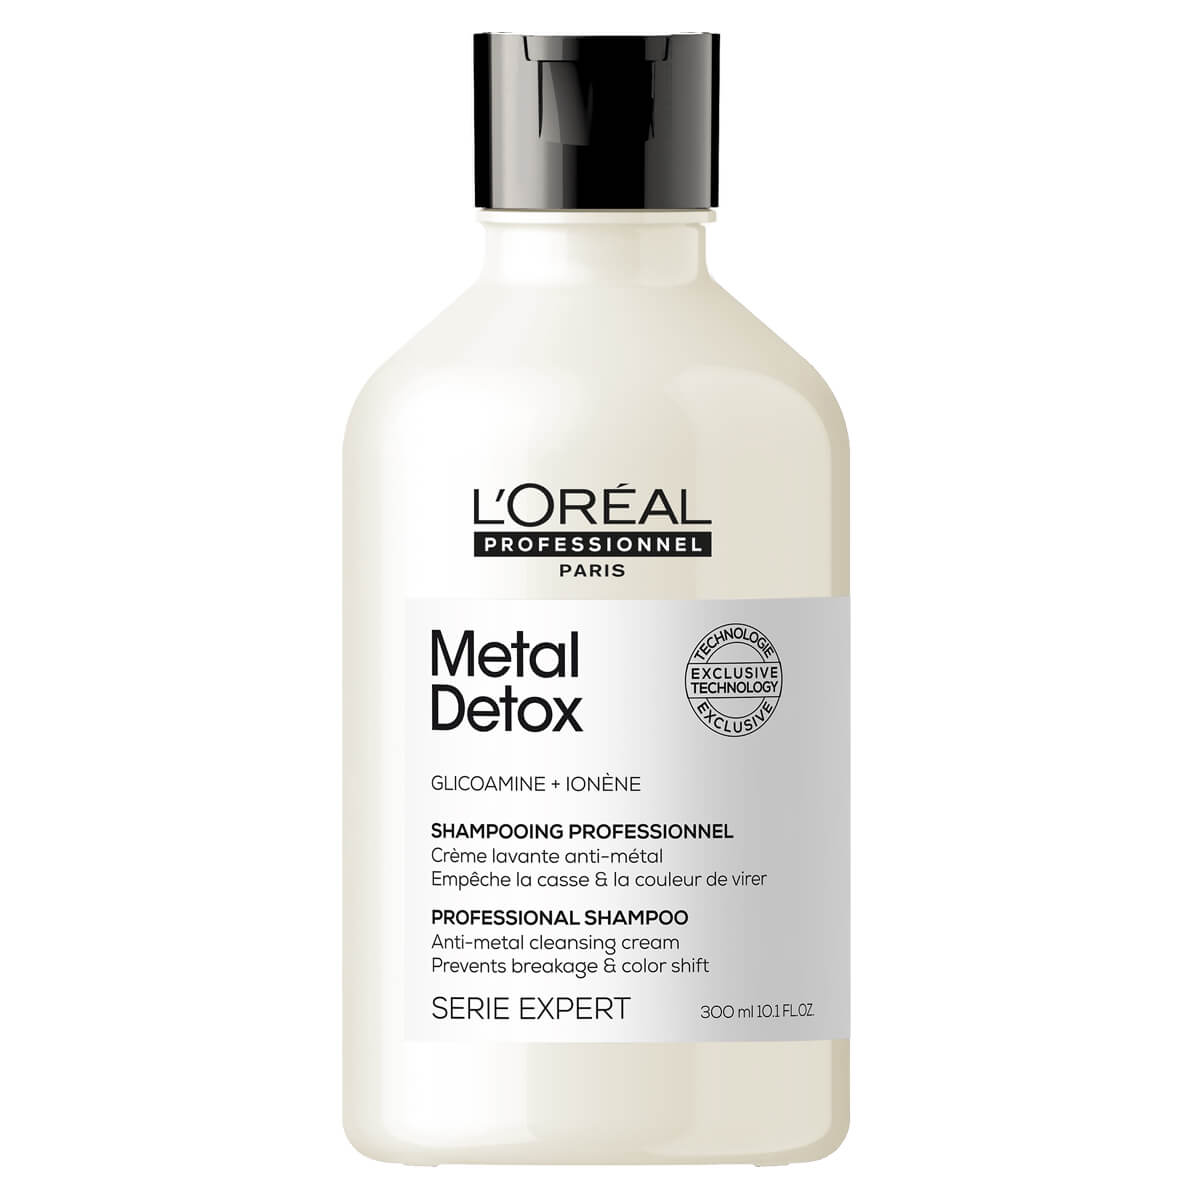 loreal blondifier cool neutralizujący szampon opinie